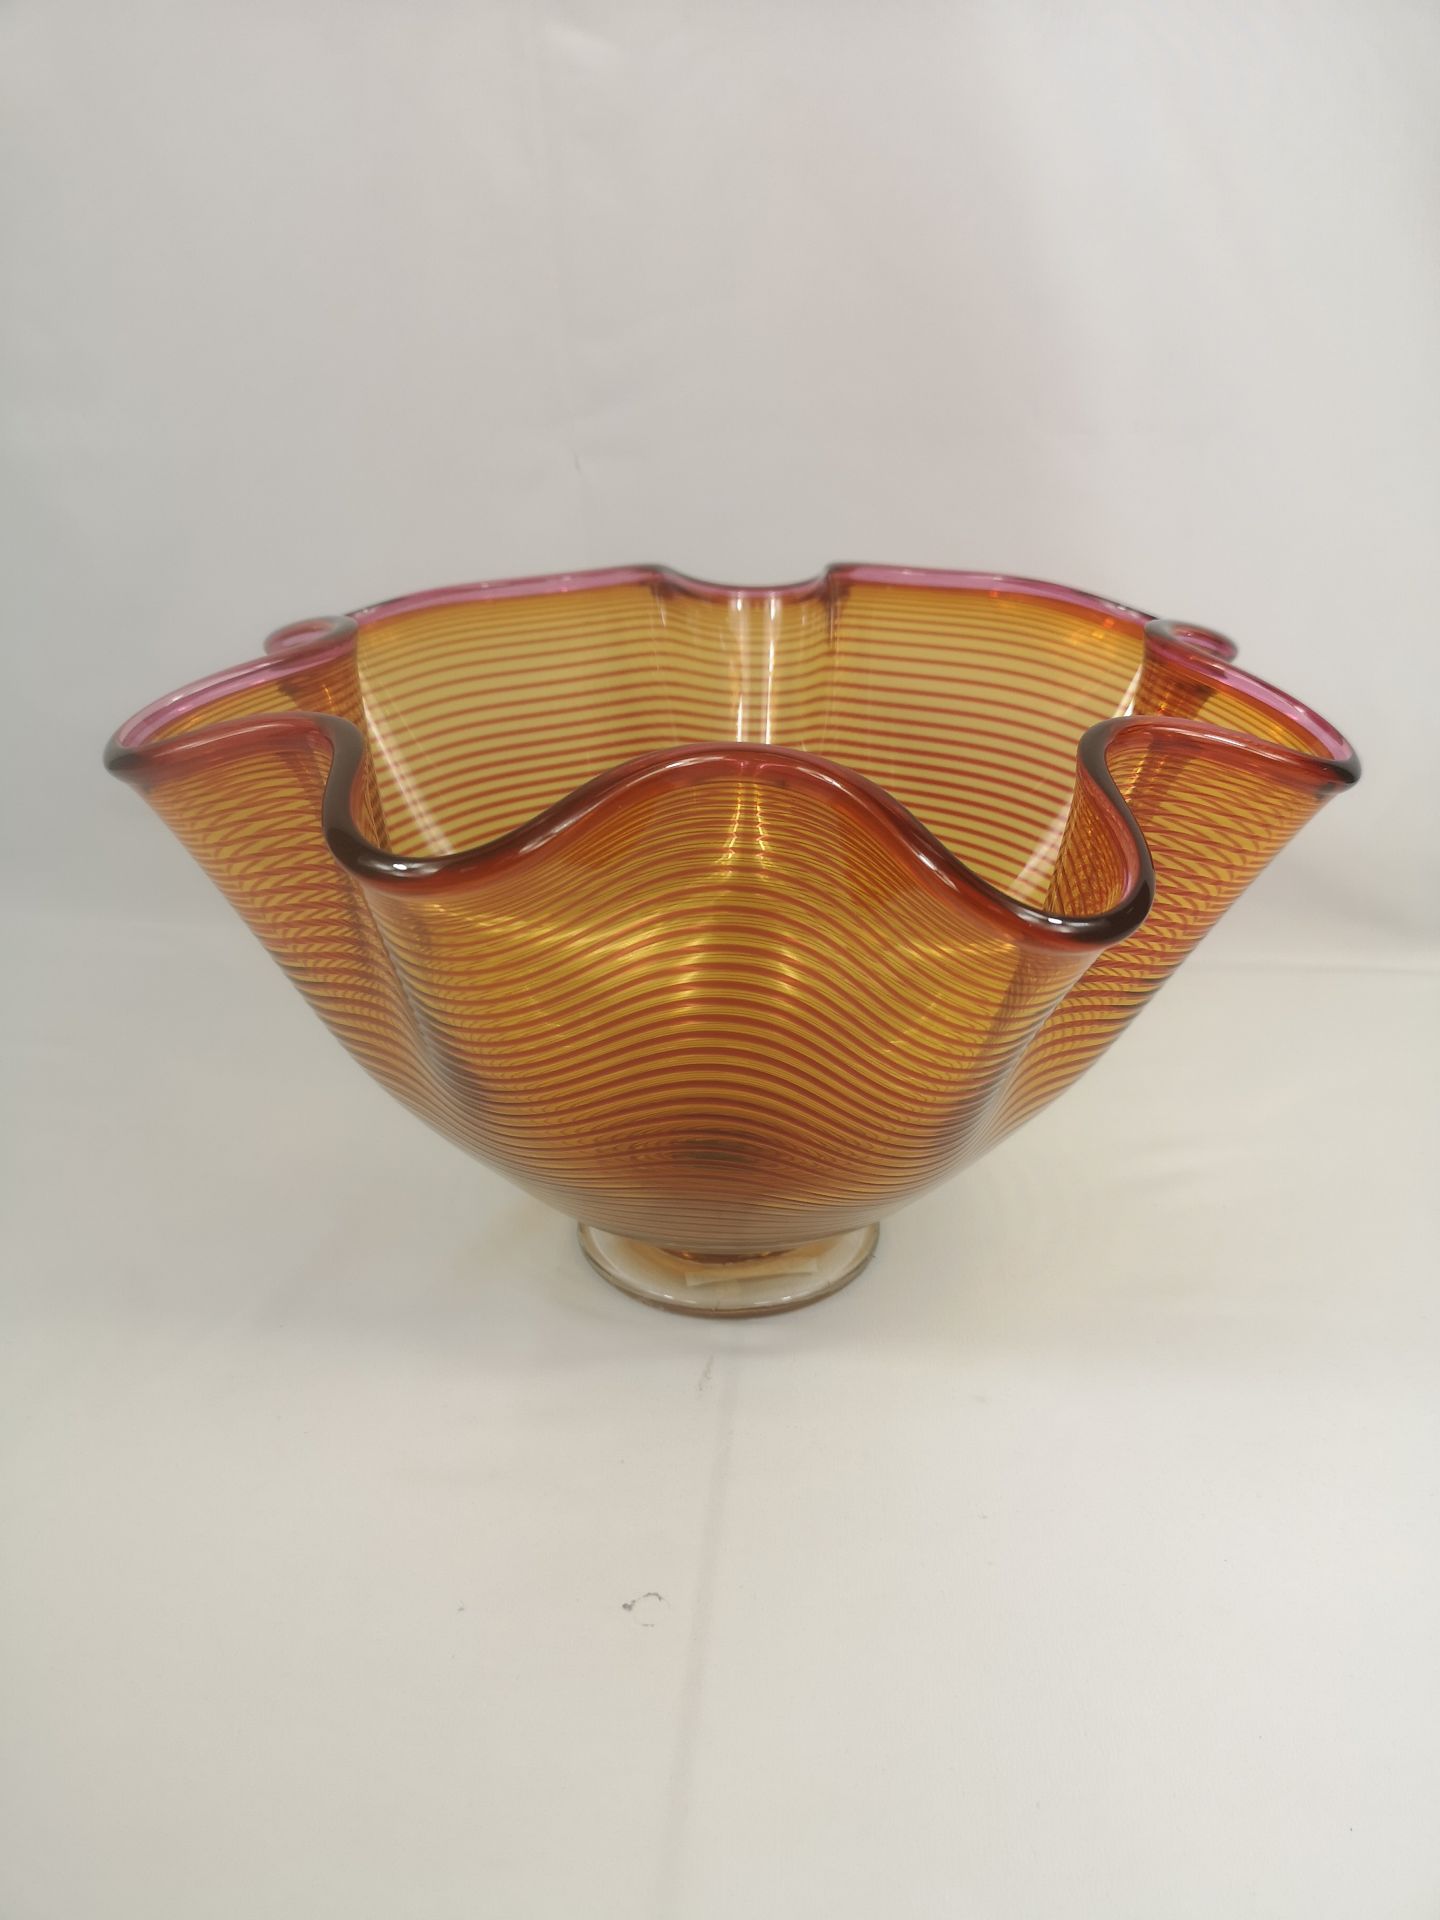 Orange glass vase by Bob Crooks - Image 3 of 4